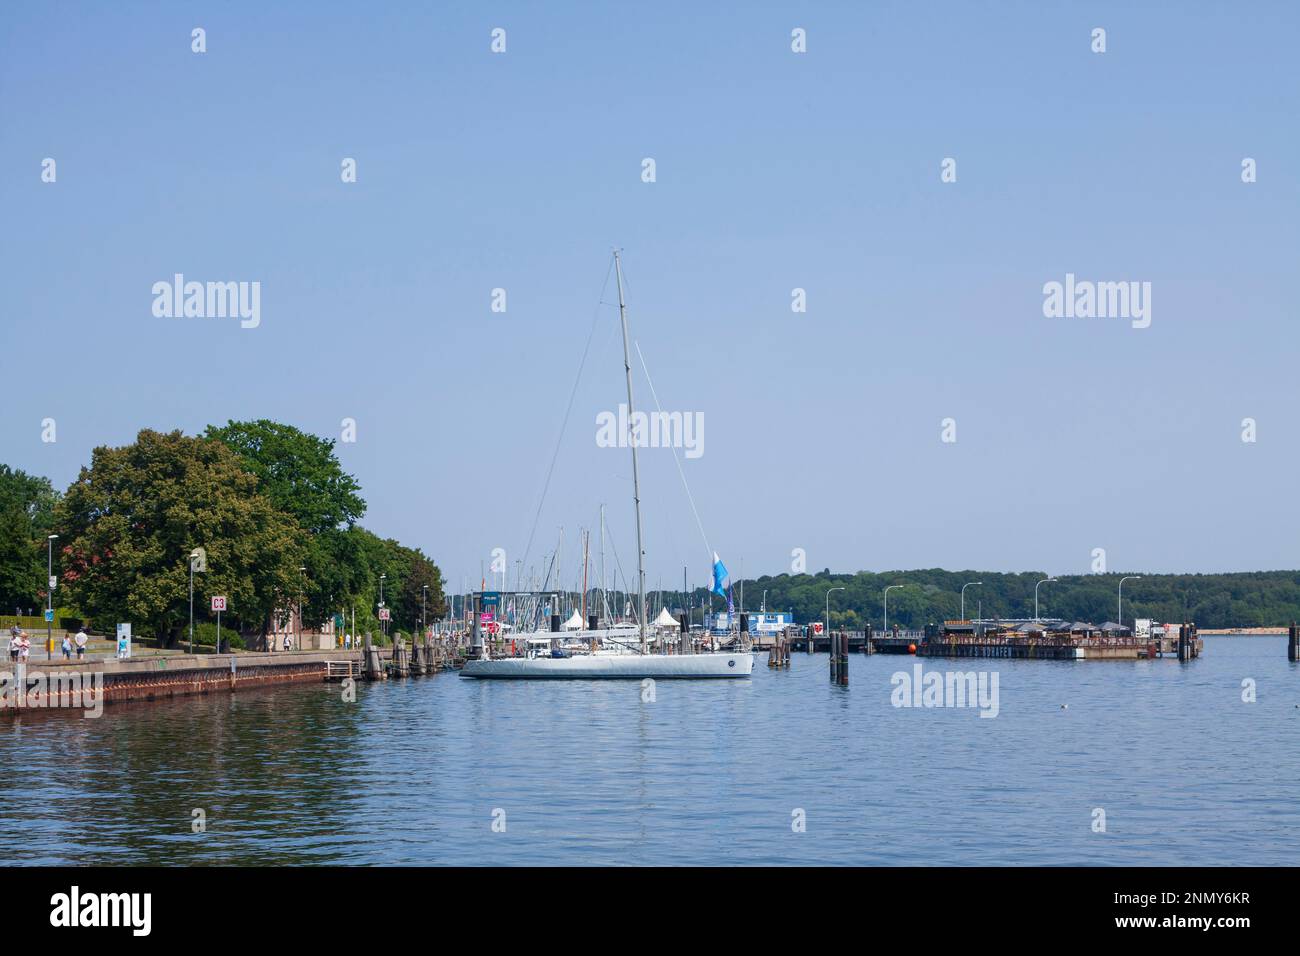 Marina with sailboats, Kiel Fjord, Kiel, Schleswig-Holstein, Germany, Europe Stock Photo